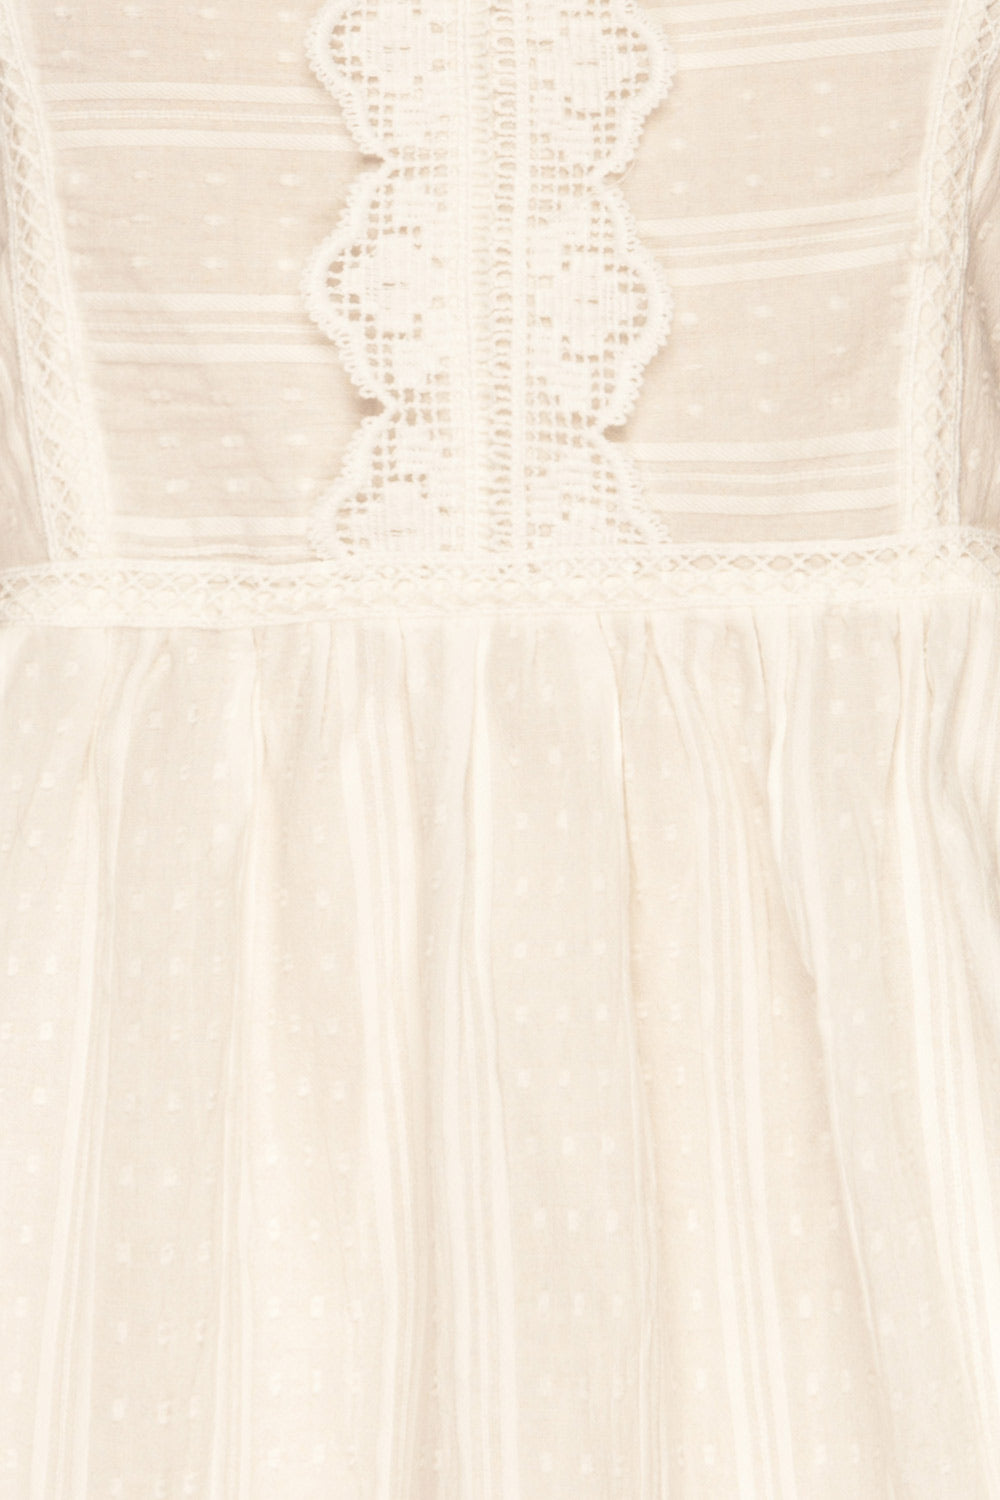 Hillerod White Blouse with Lace Details fabric detail | La Petite Garçonne